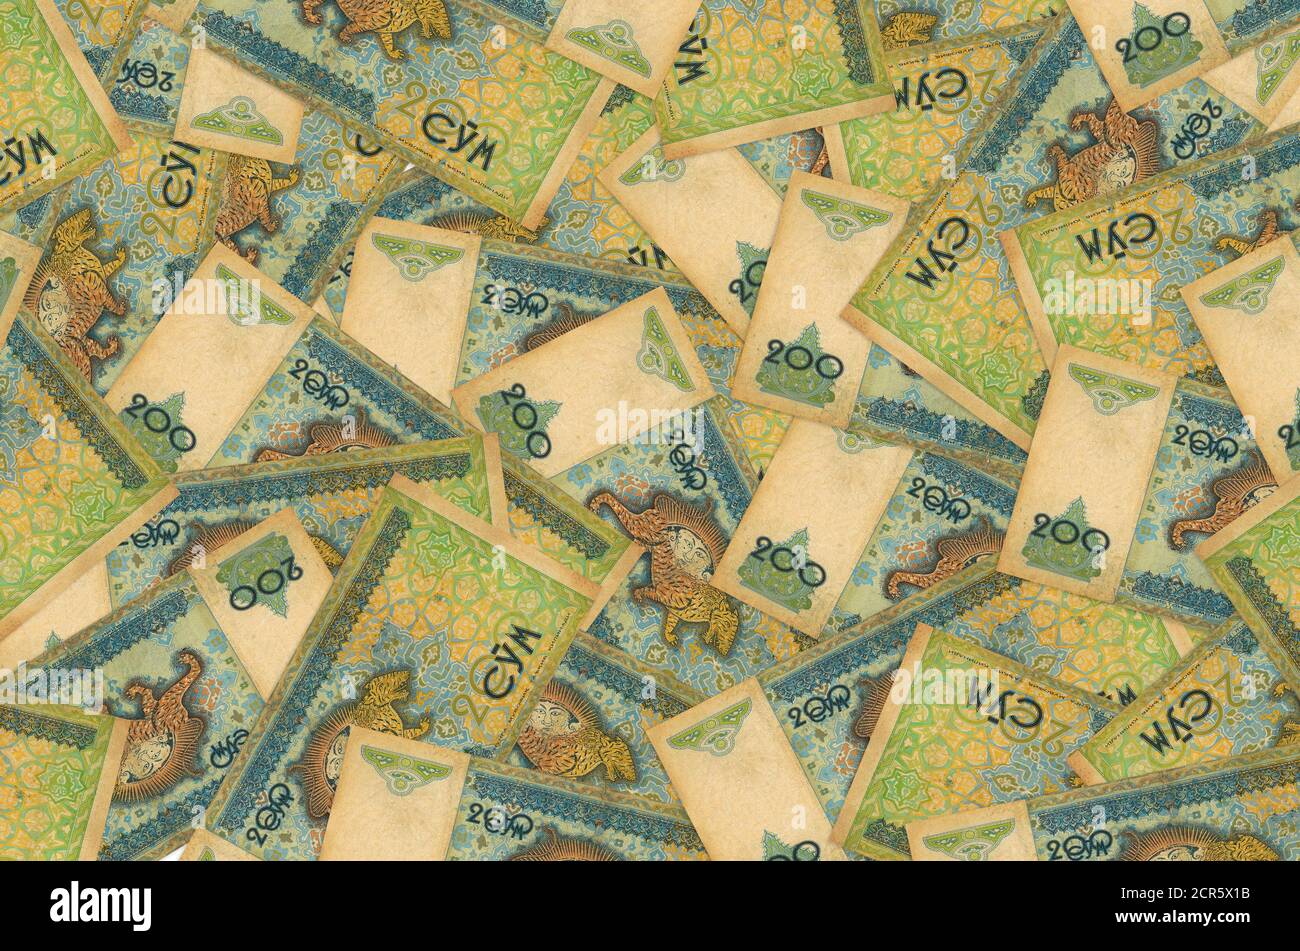 200 les factures d'ouzbek se trouvent dans une pile. Fond conceptuel riche de la vie. Beaucoup d'argent Banque D'Images